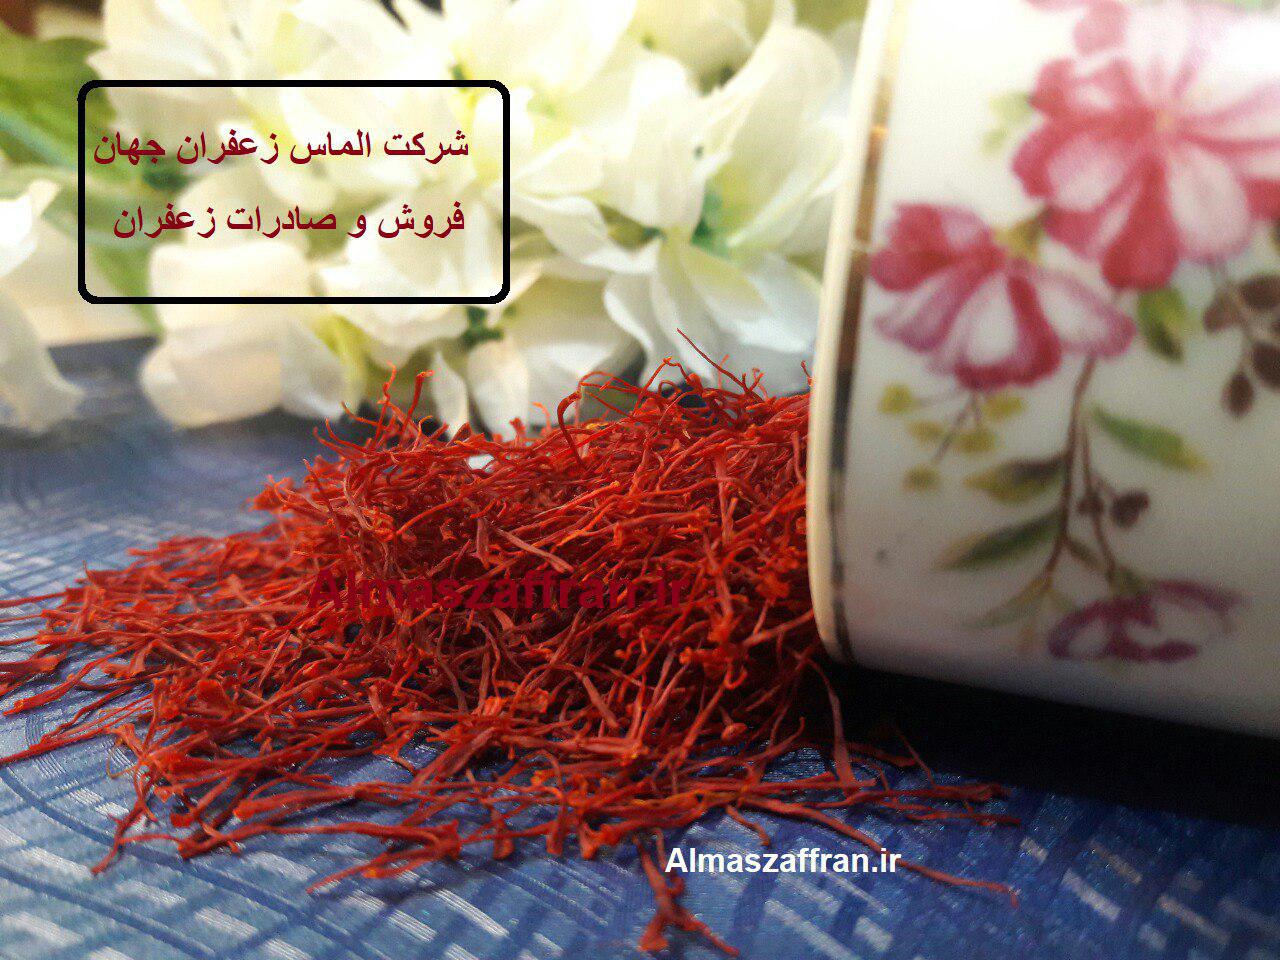 خرید زعفران در بازار تهران و مشهد